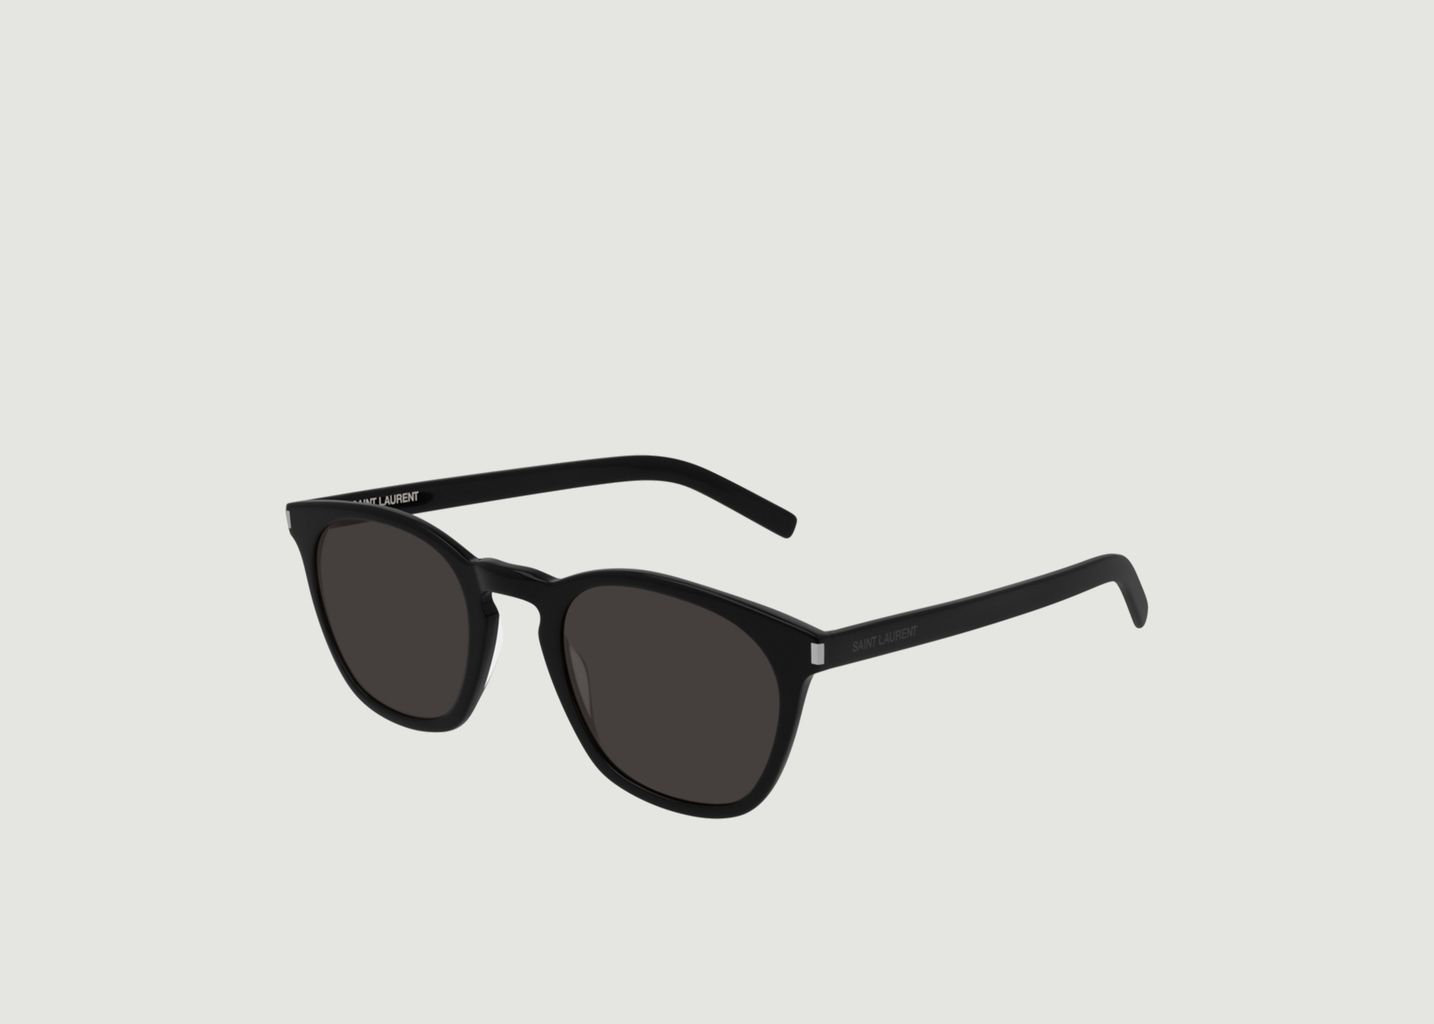 Saint Laurent Rounded Sunglasses